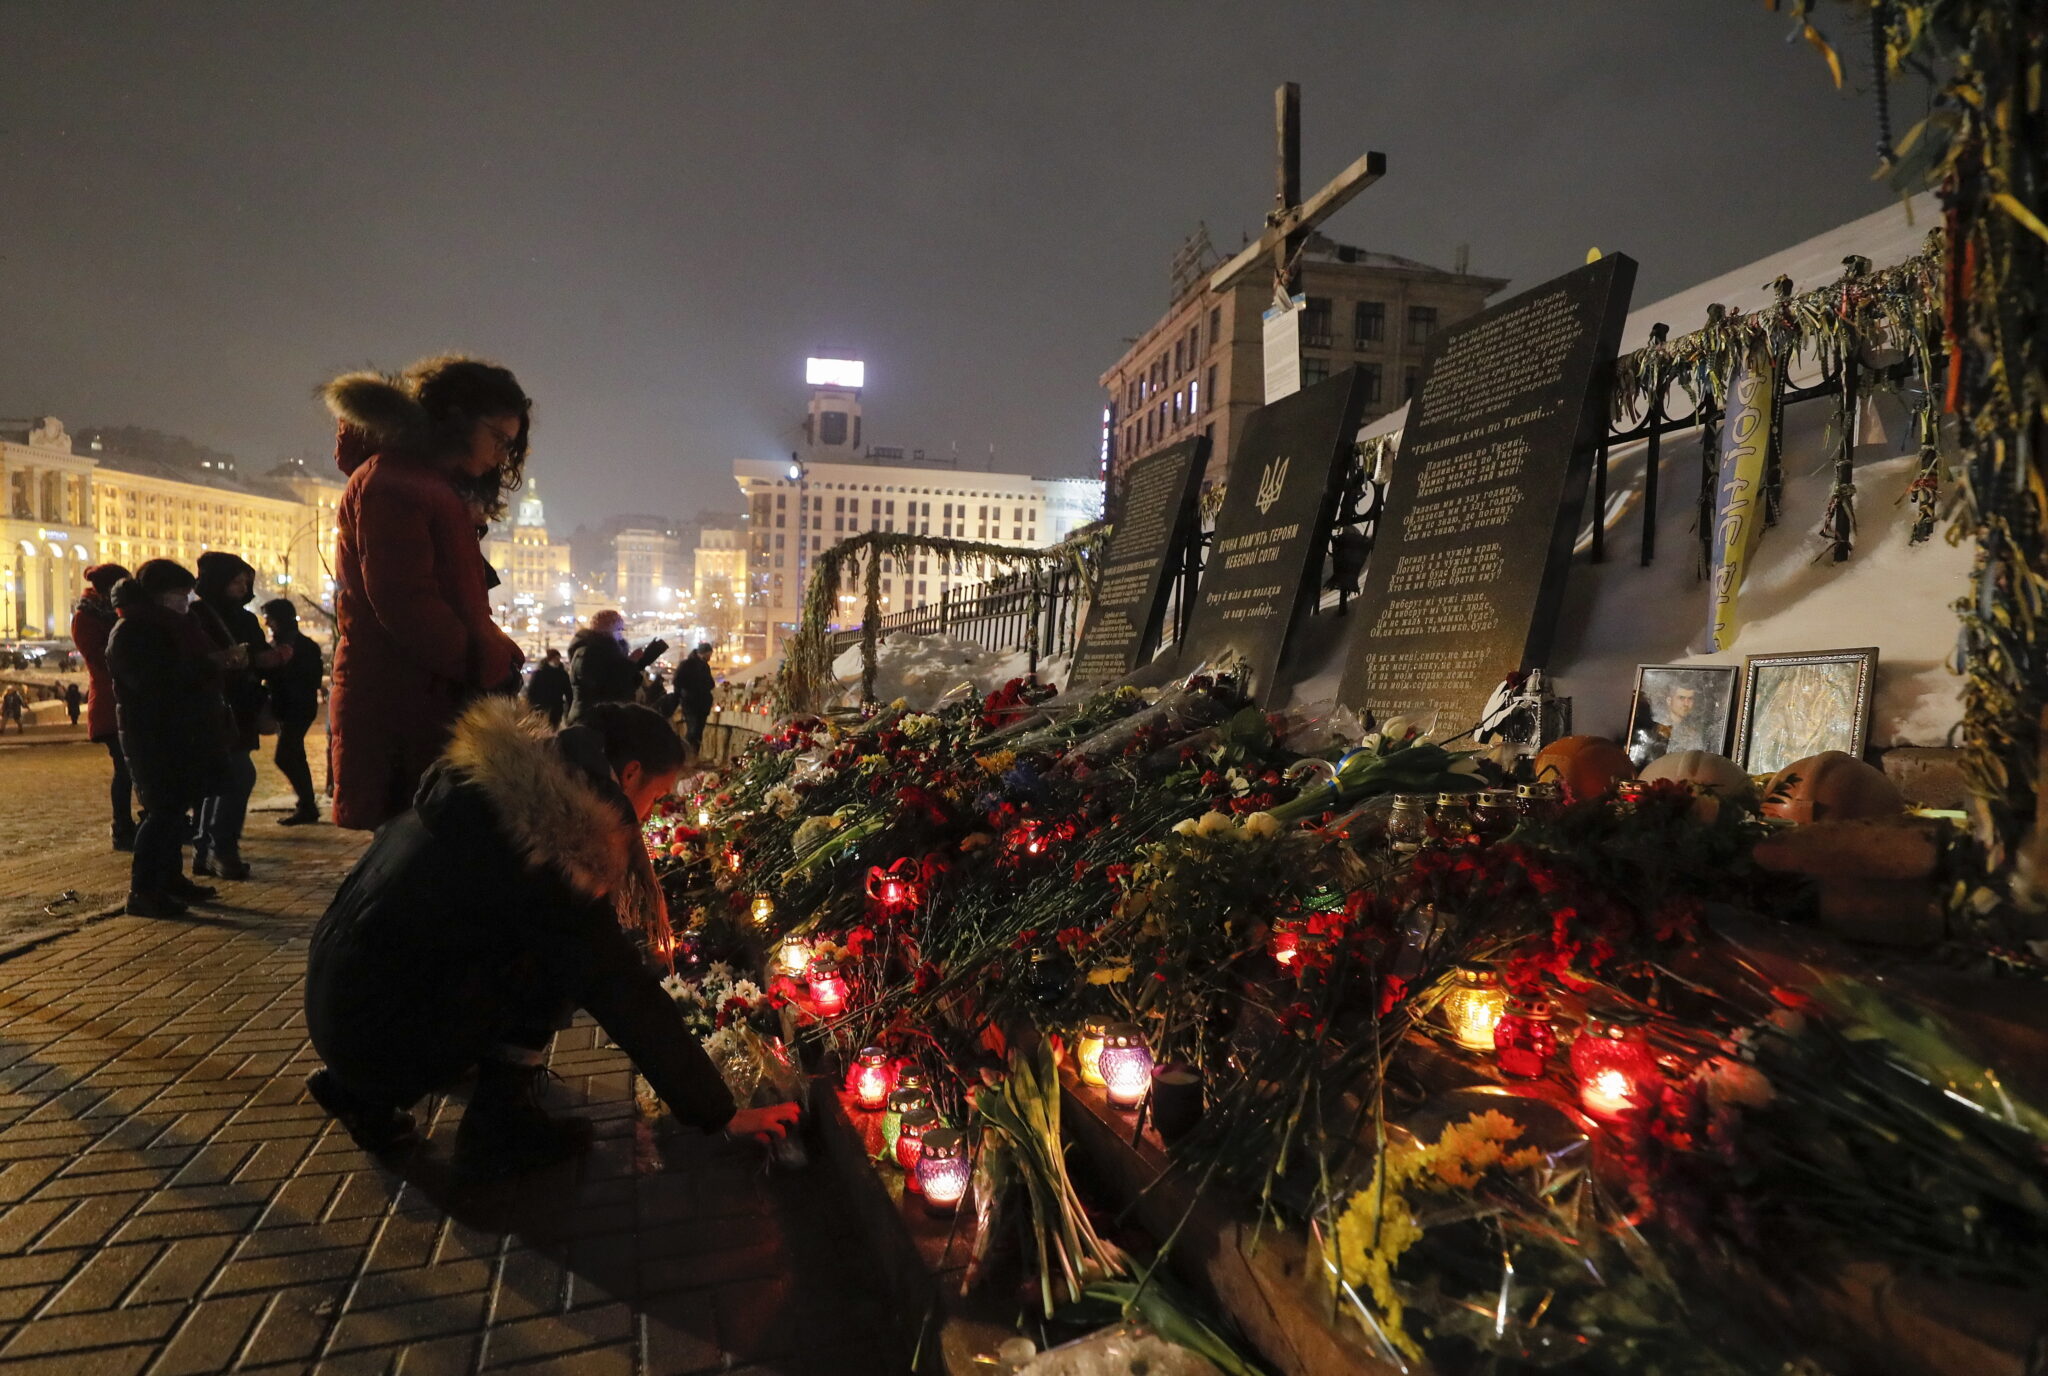 Jesienią 2013 r. na Ukrainie rozpoczęły się protesty przeciwko niepodpisaniu przez ówczesne władze w Kijowie umowy stowarzyszeniowej z UE, zwane Rewolucją Godności. W jej trakcie zginęło ponad 100 demonstrantów, a ponad pół tysiąca osób zostało rannych. Do najbardziej krwawych starć doszło 20 lutego 2014, fot.  EPA/SERGEY DOLZHENKO